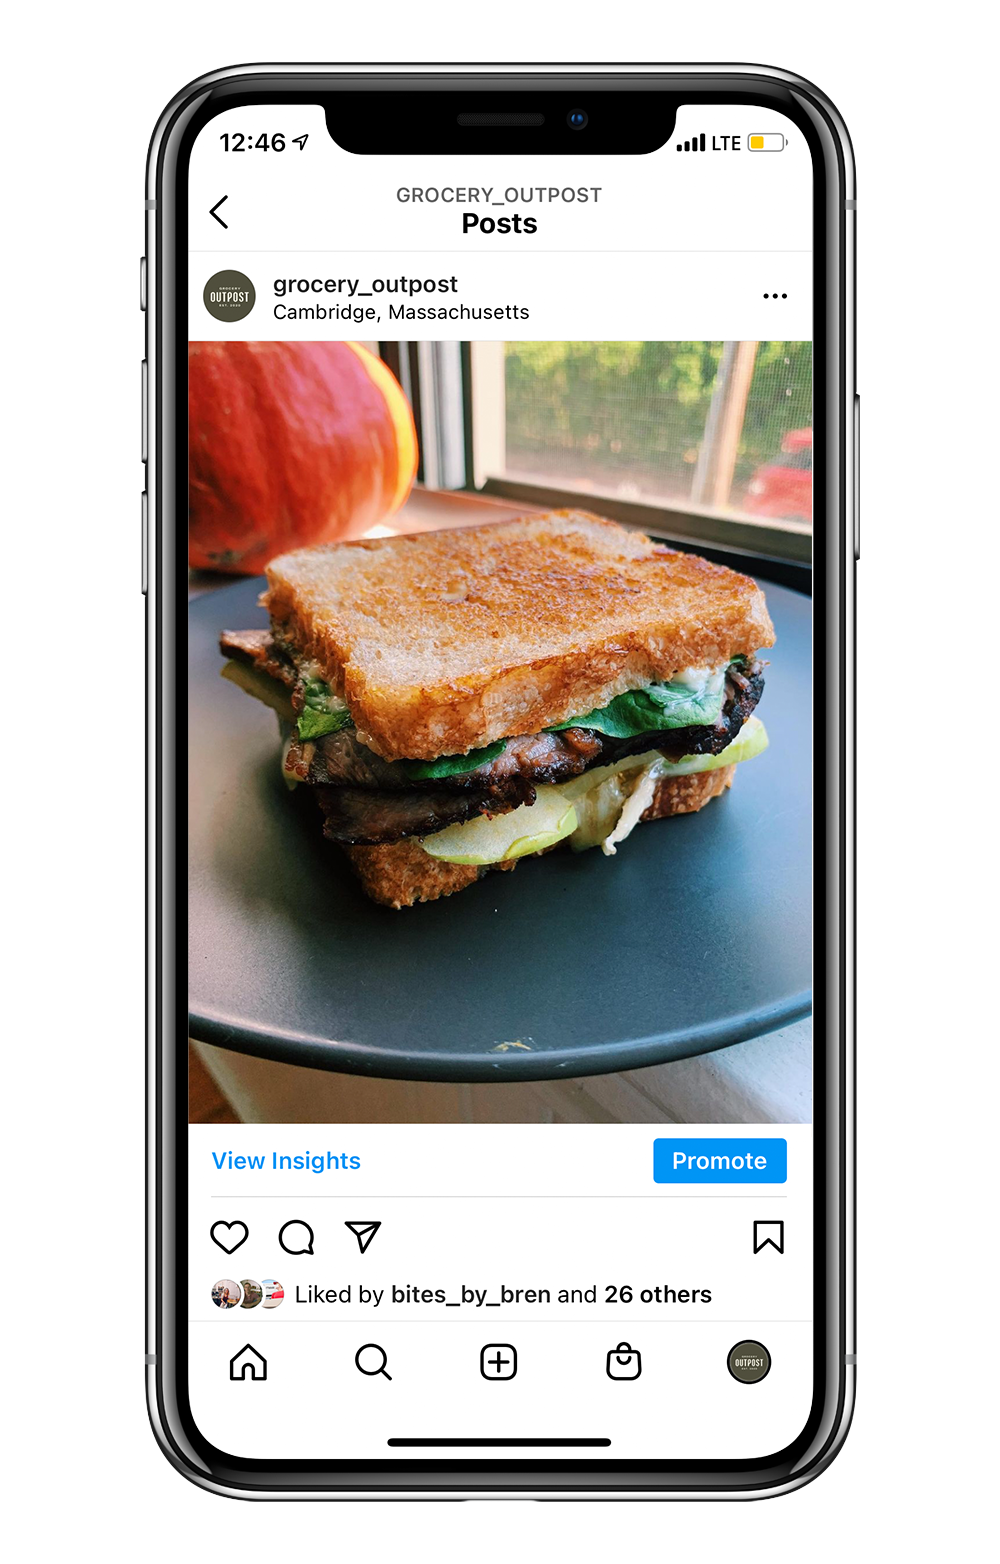 Instagram post showing a roast beef sandwich.